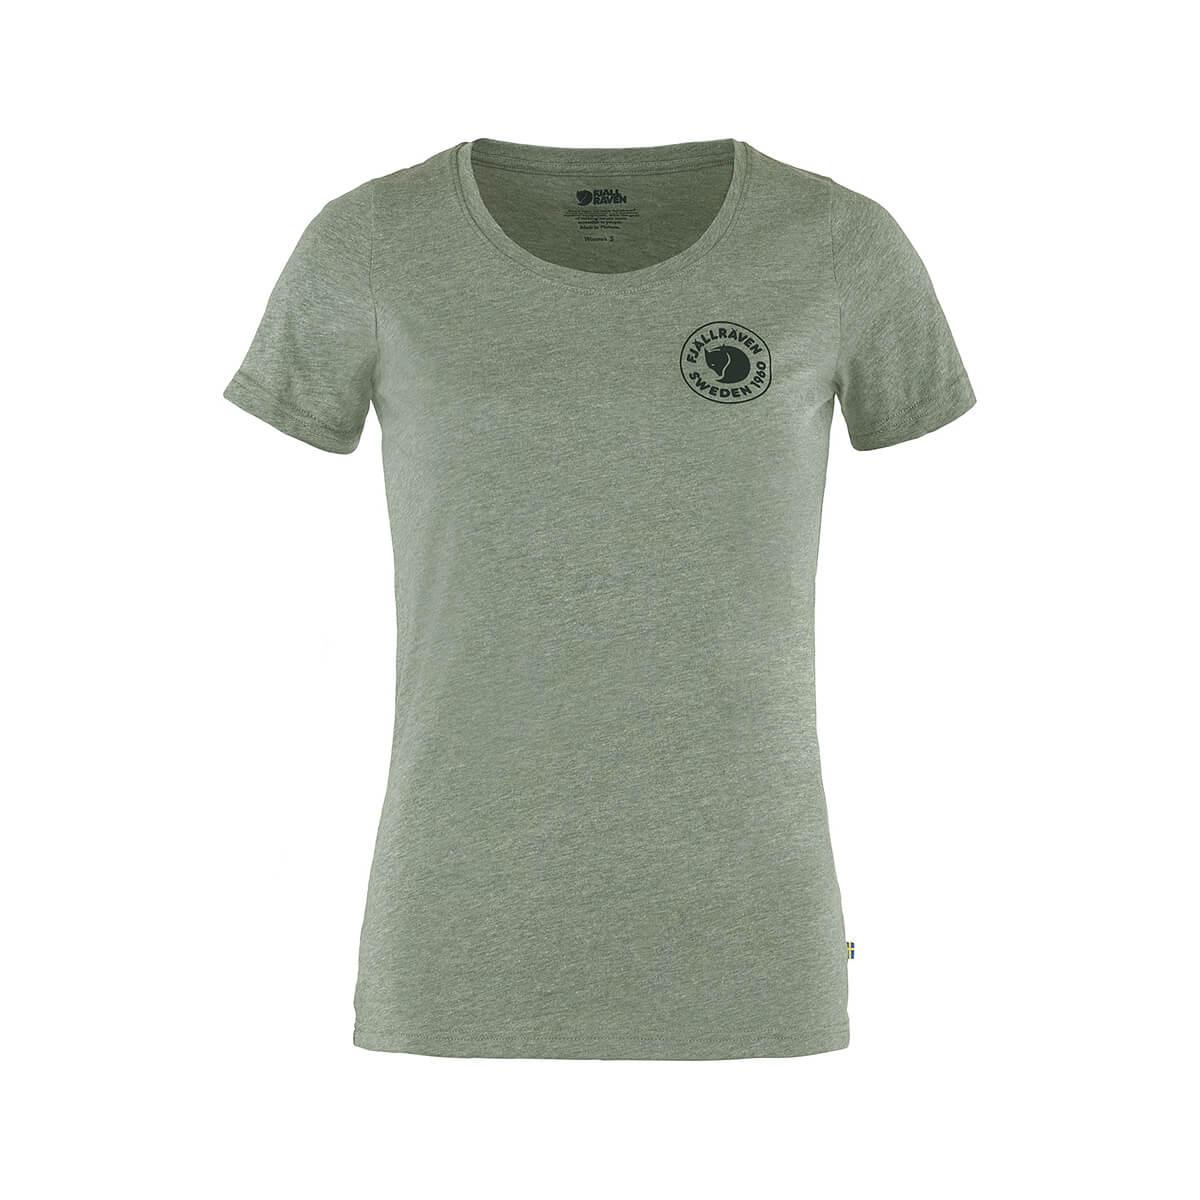  Women's 1960 Logo Short Sleeve T- Shirt